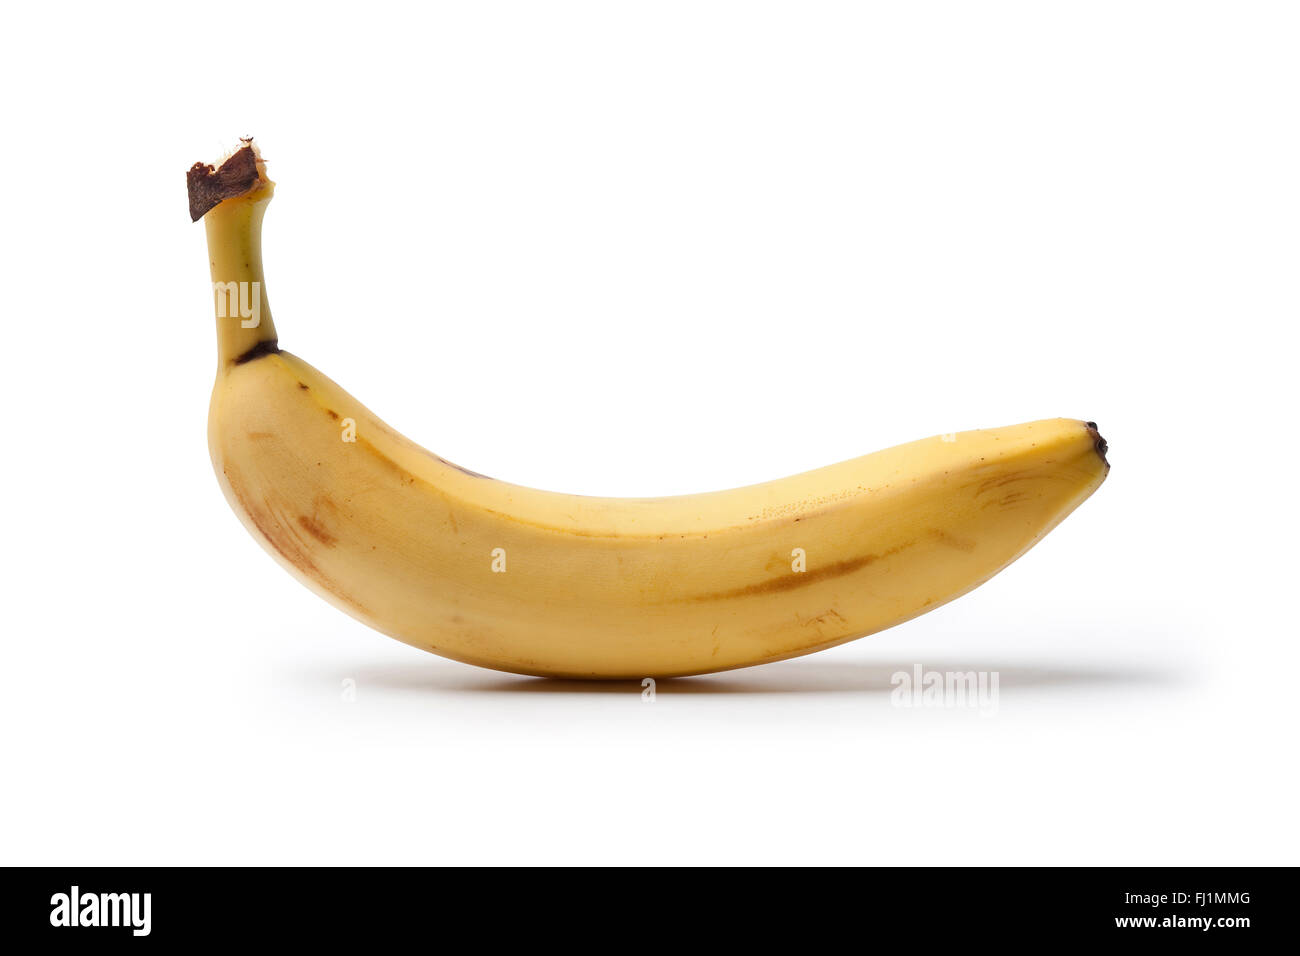 Eine ganze ungeschälte Banane auf weißem Hintergrund Stockfoto